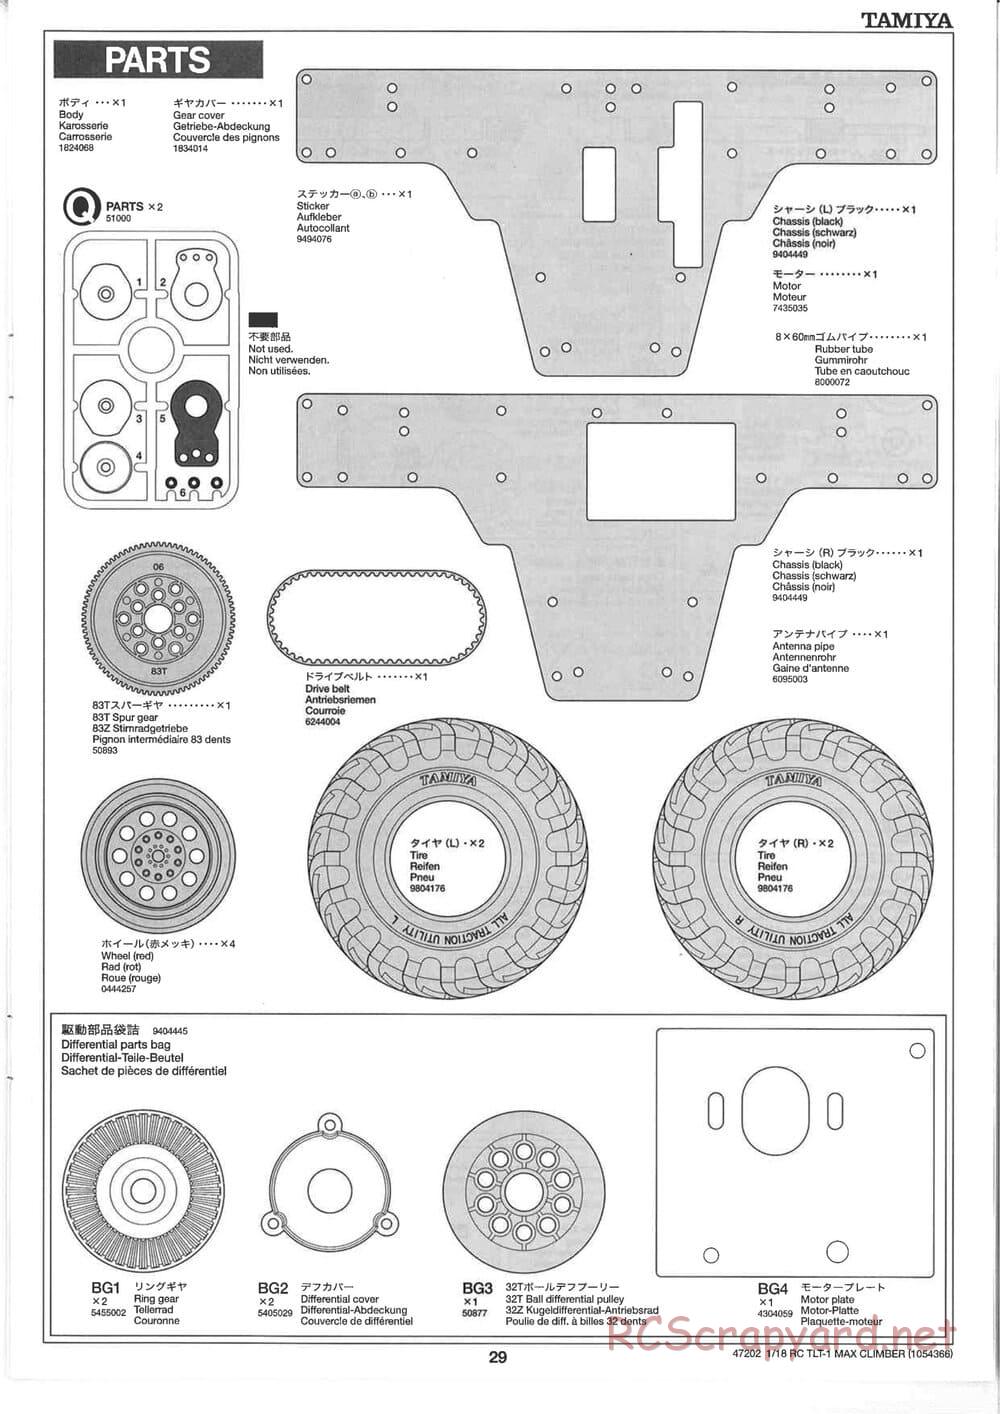 Tamiya - Max Climber - TLT-1 Chassis - Manual - Page 29